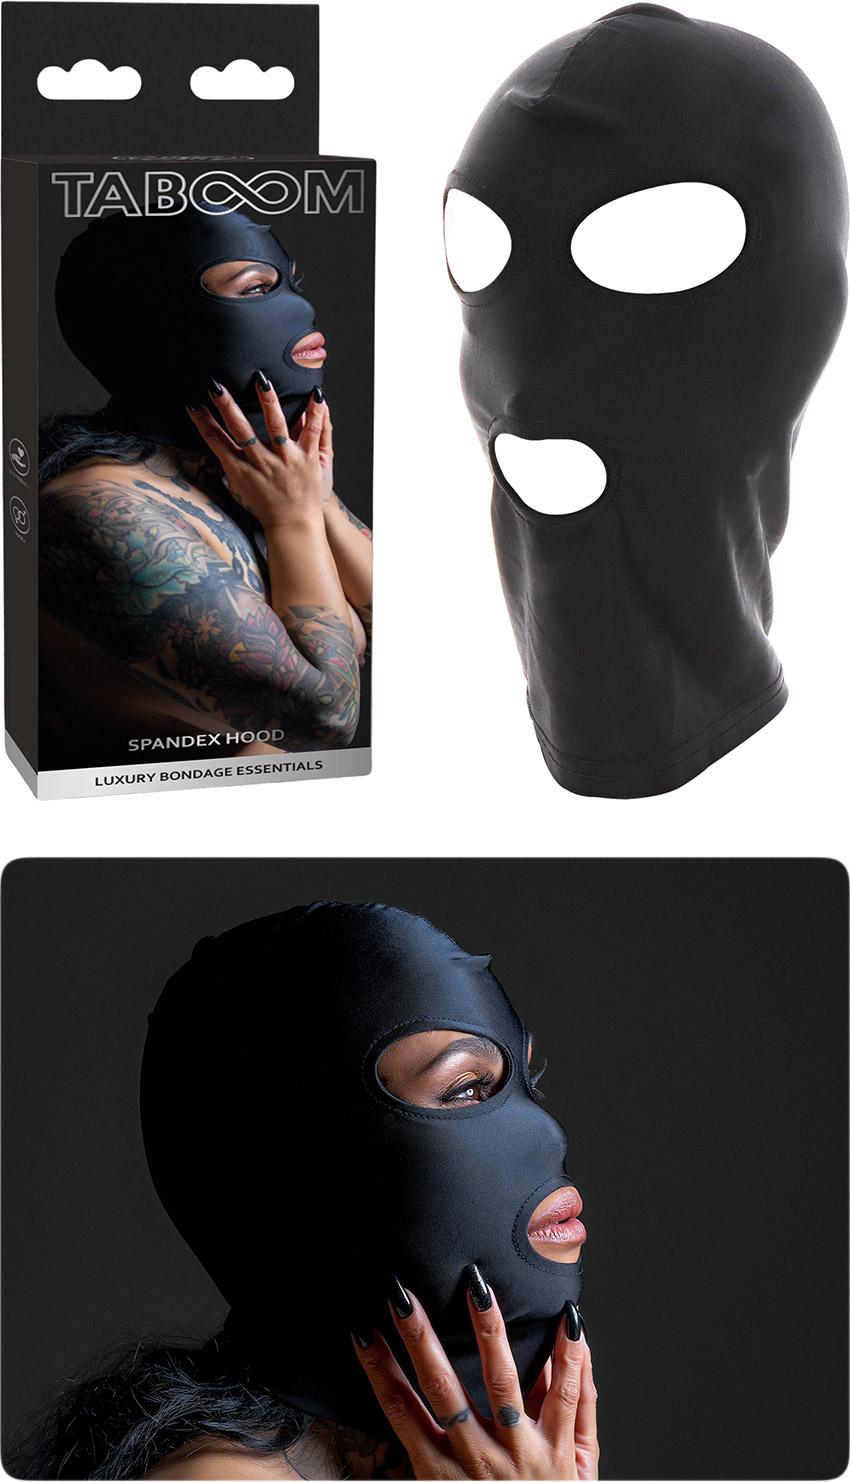 Taboom Luxury Bondage Kopfmaske aus Spandex - 3 Öffnungen